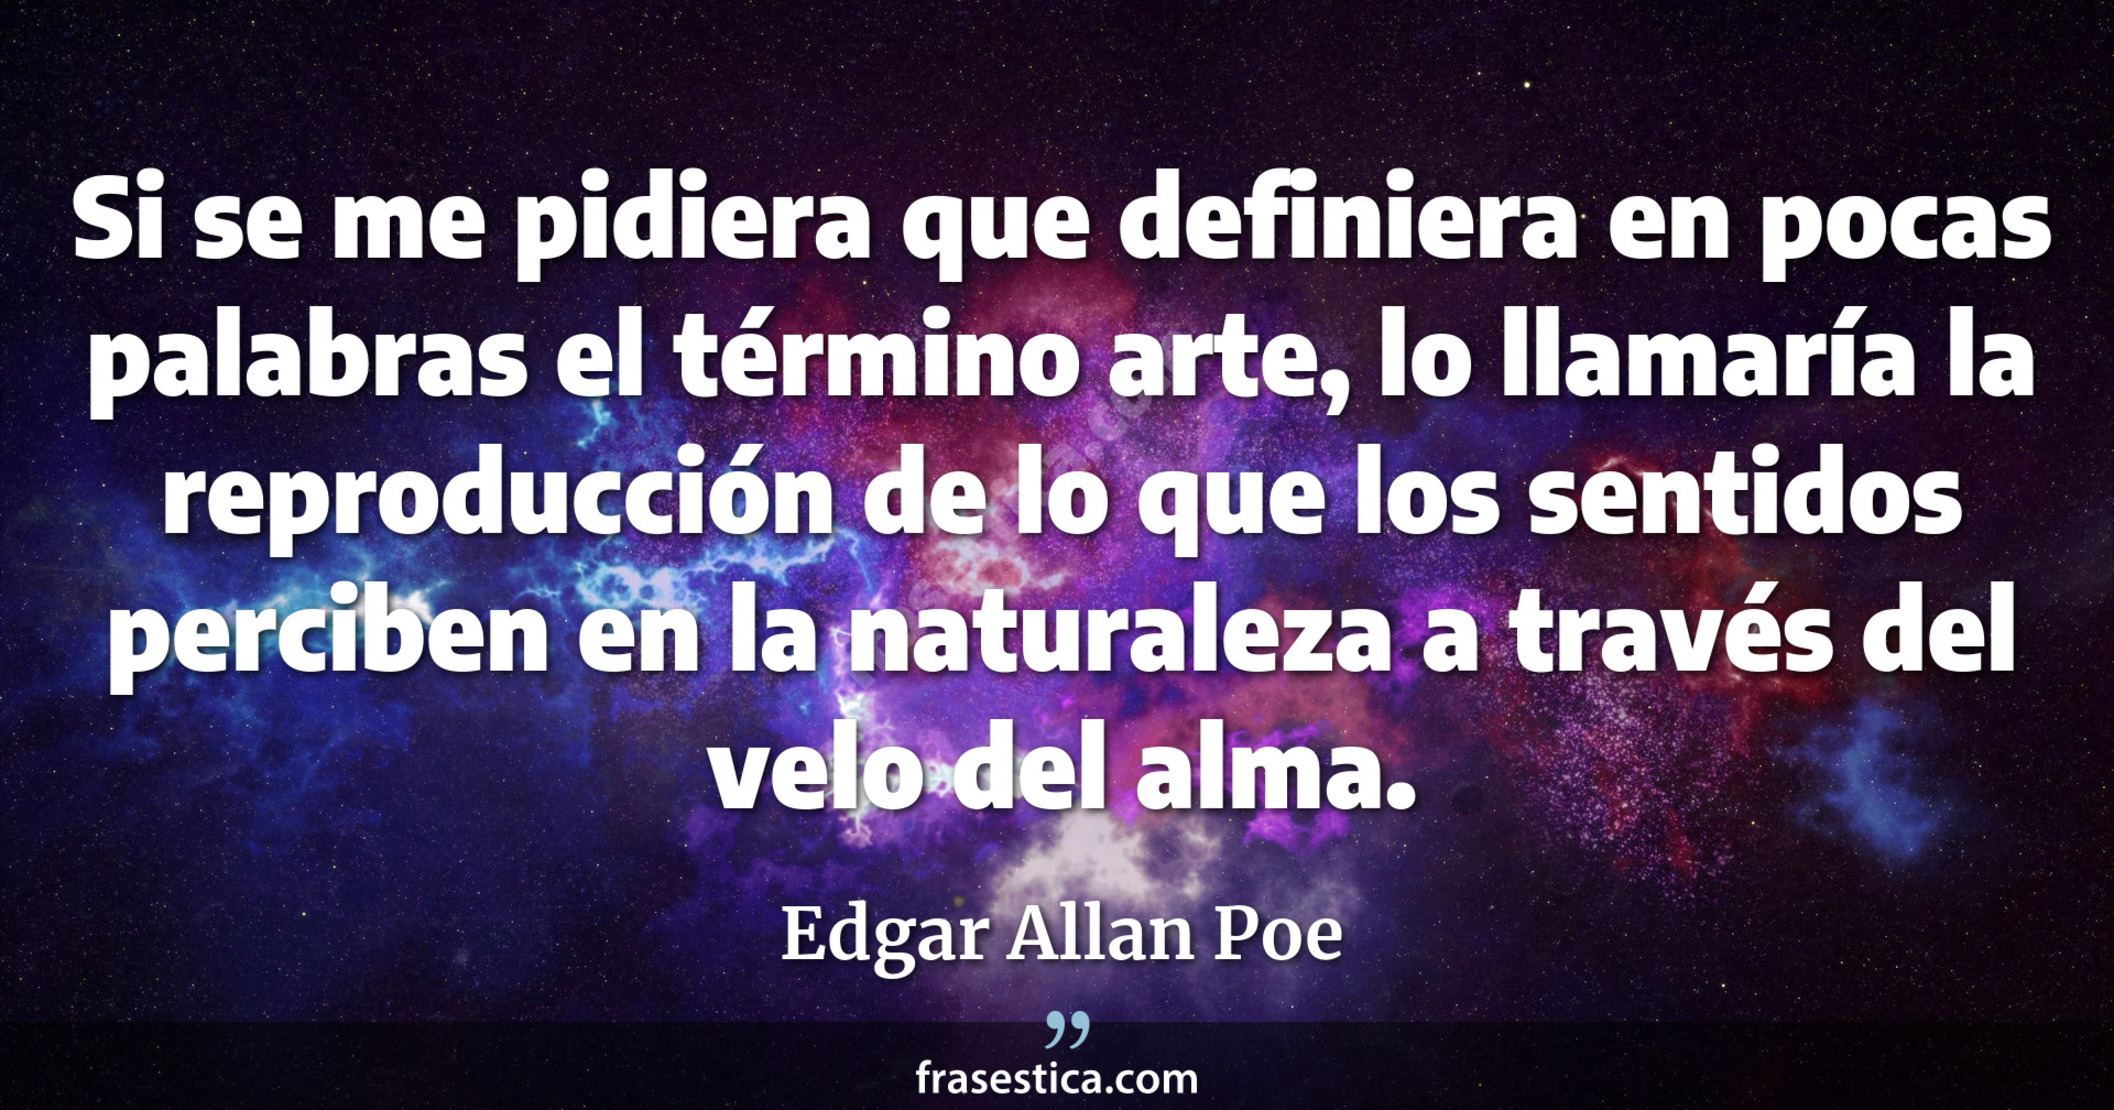 Si se me pidiera que definiera en pocas palabras el término arte, lo llamaría la reproducción de lo que los sentidos perciben en la naturaleza a través del velo del alma. - Edgar Allan Poe